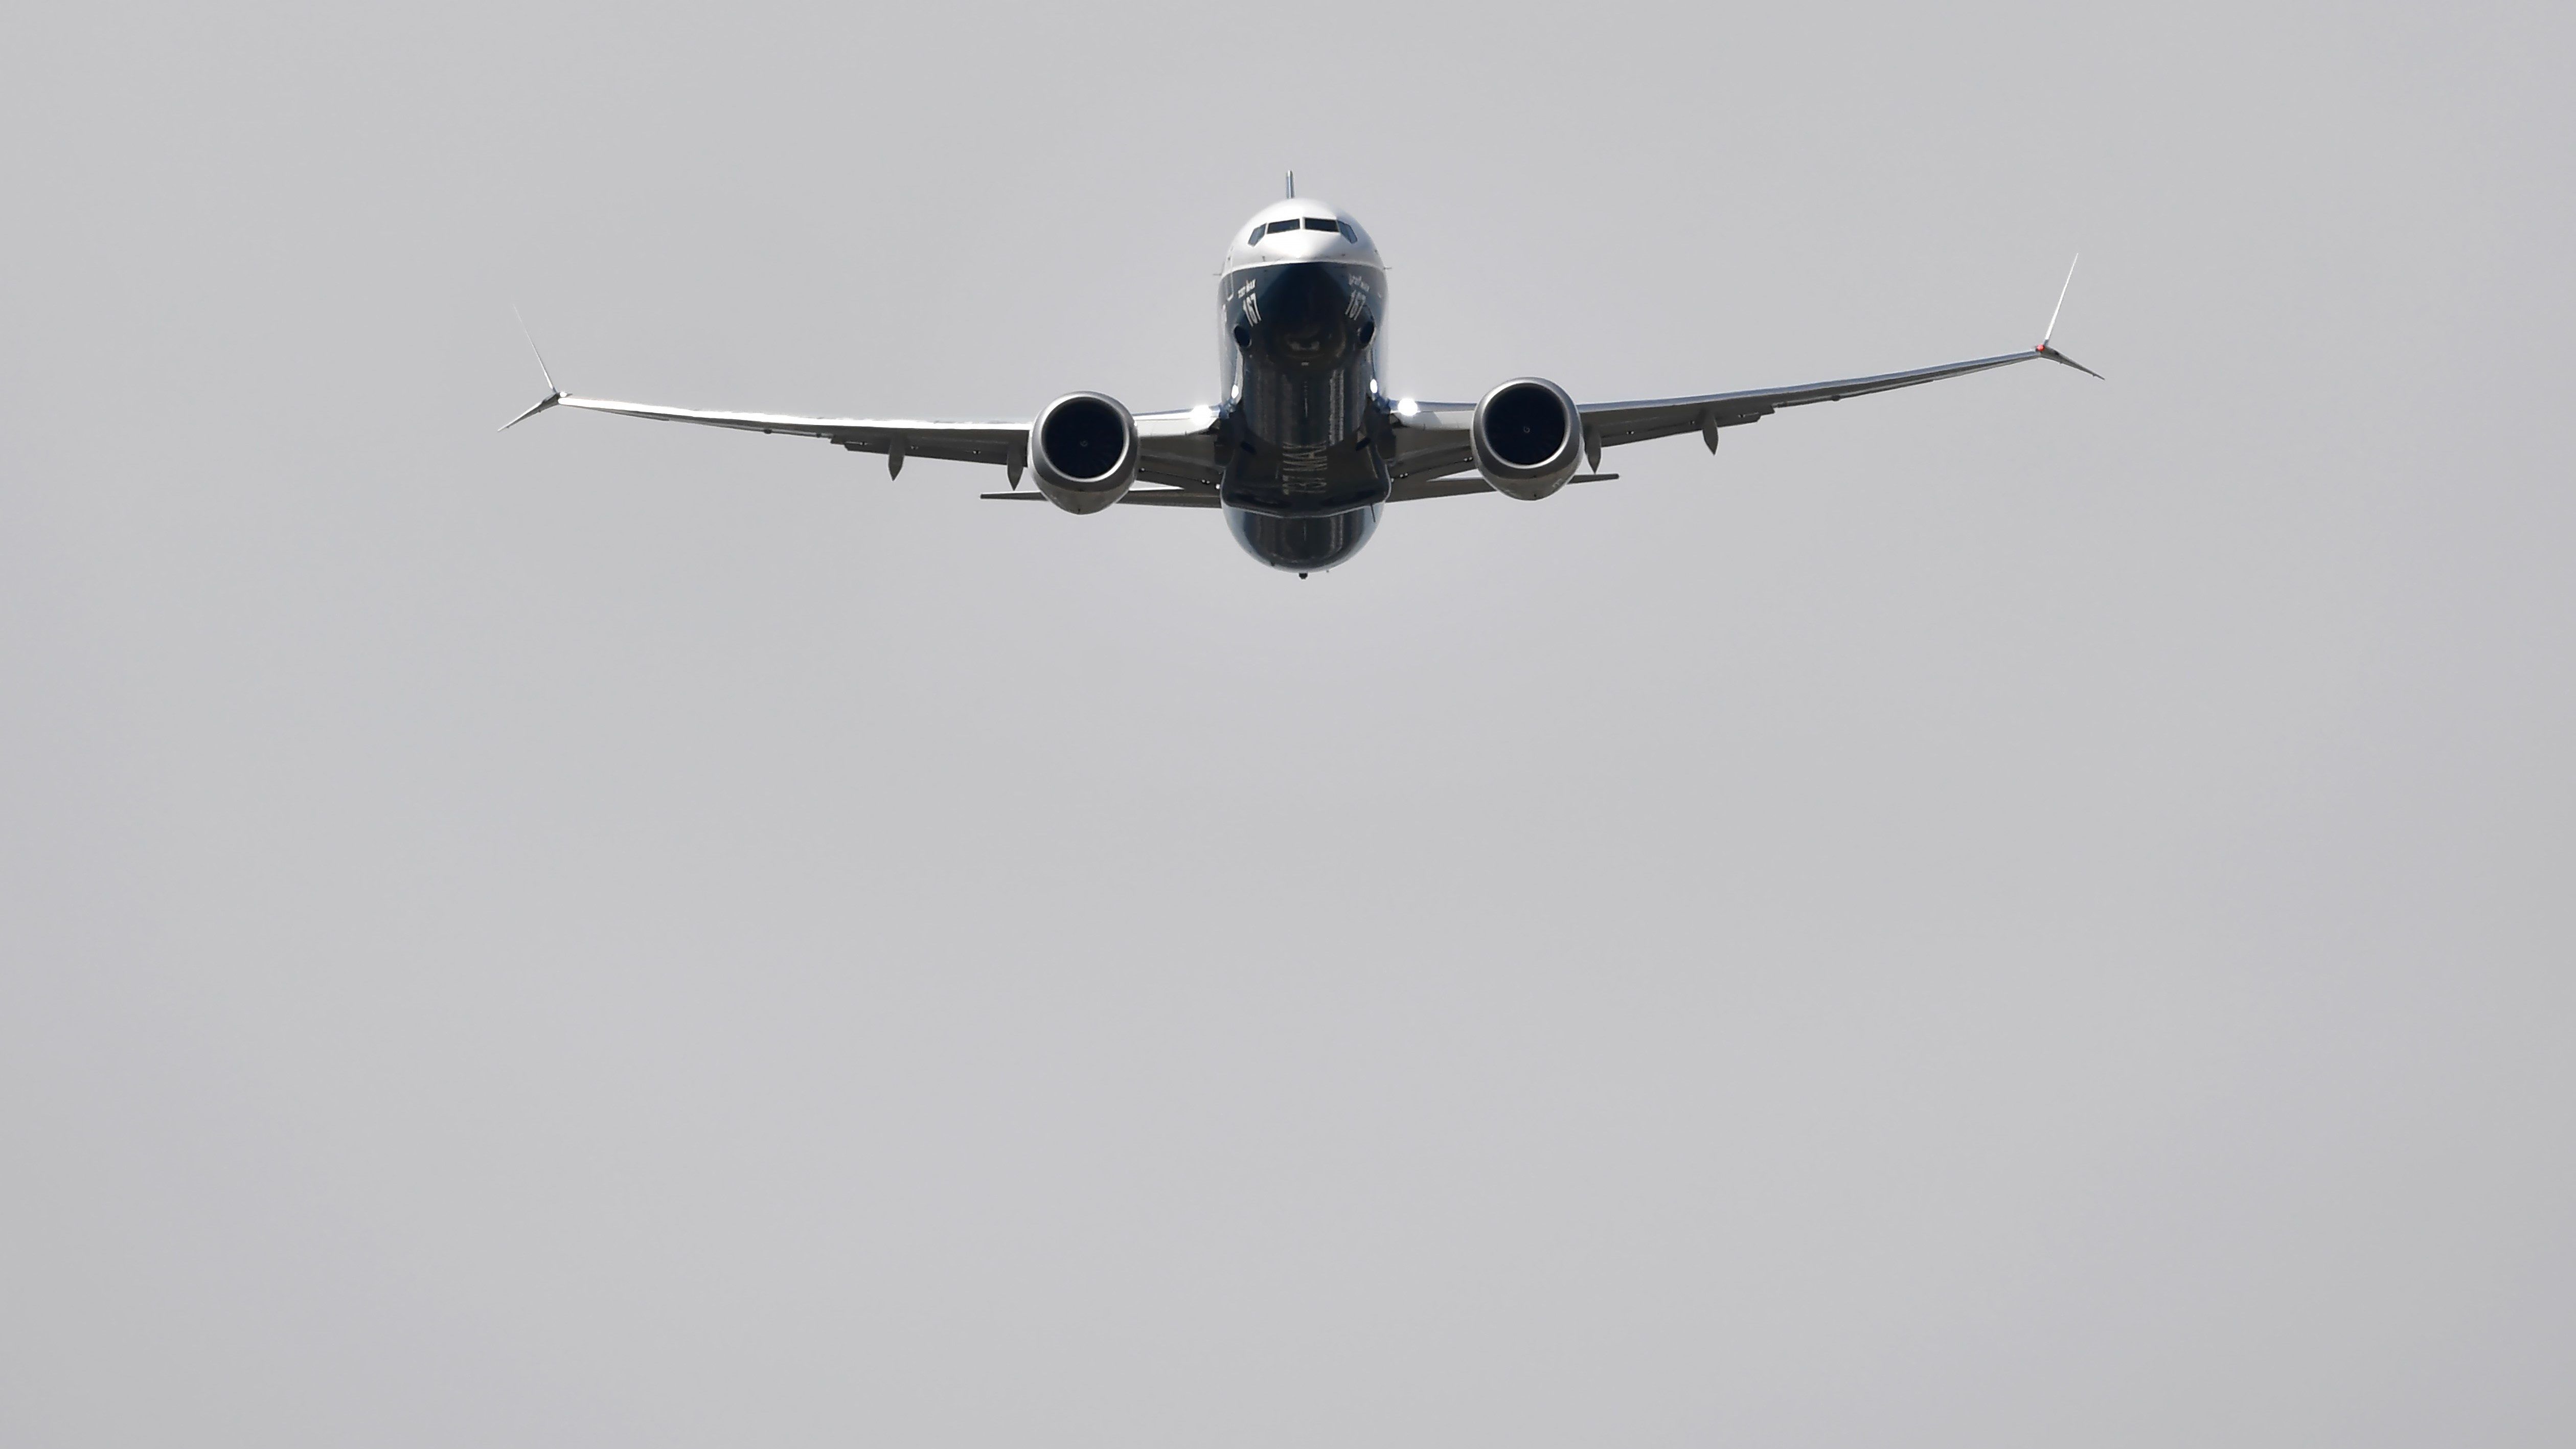 Felfüggesztik a Boeing 737 MAX-ek üzemelését Európában